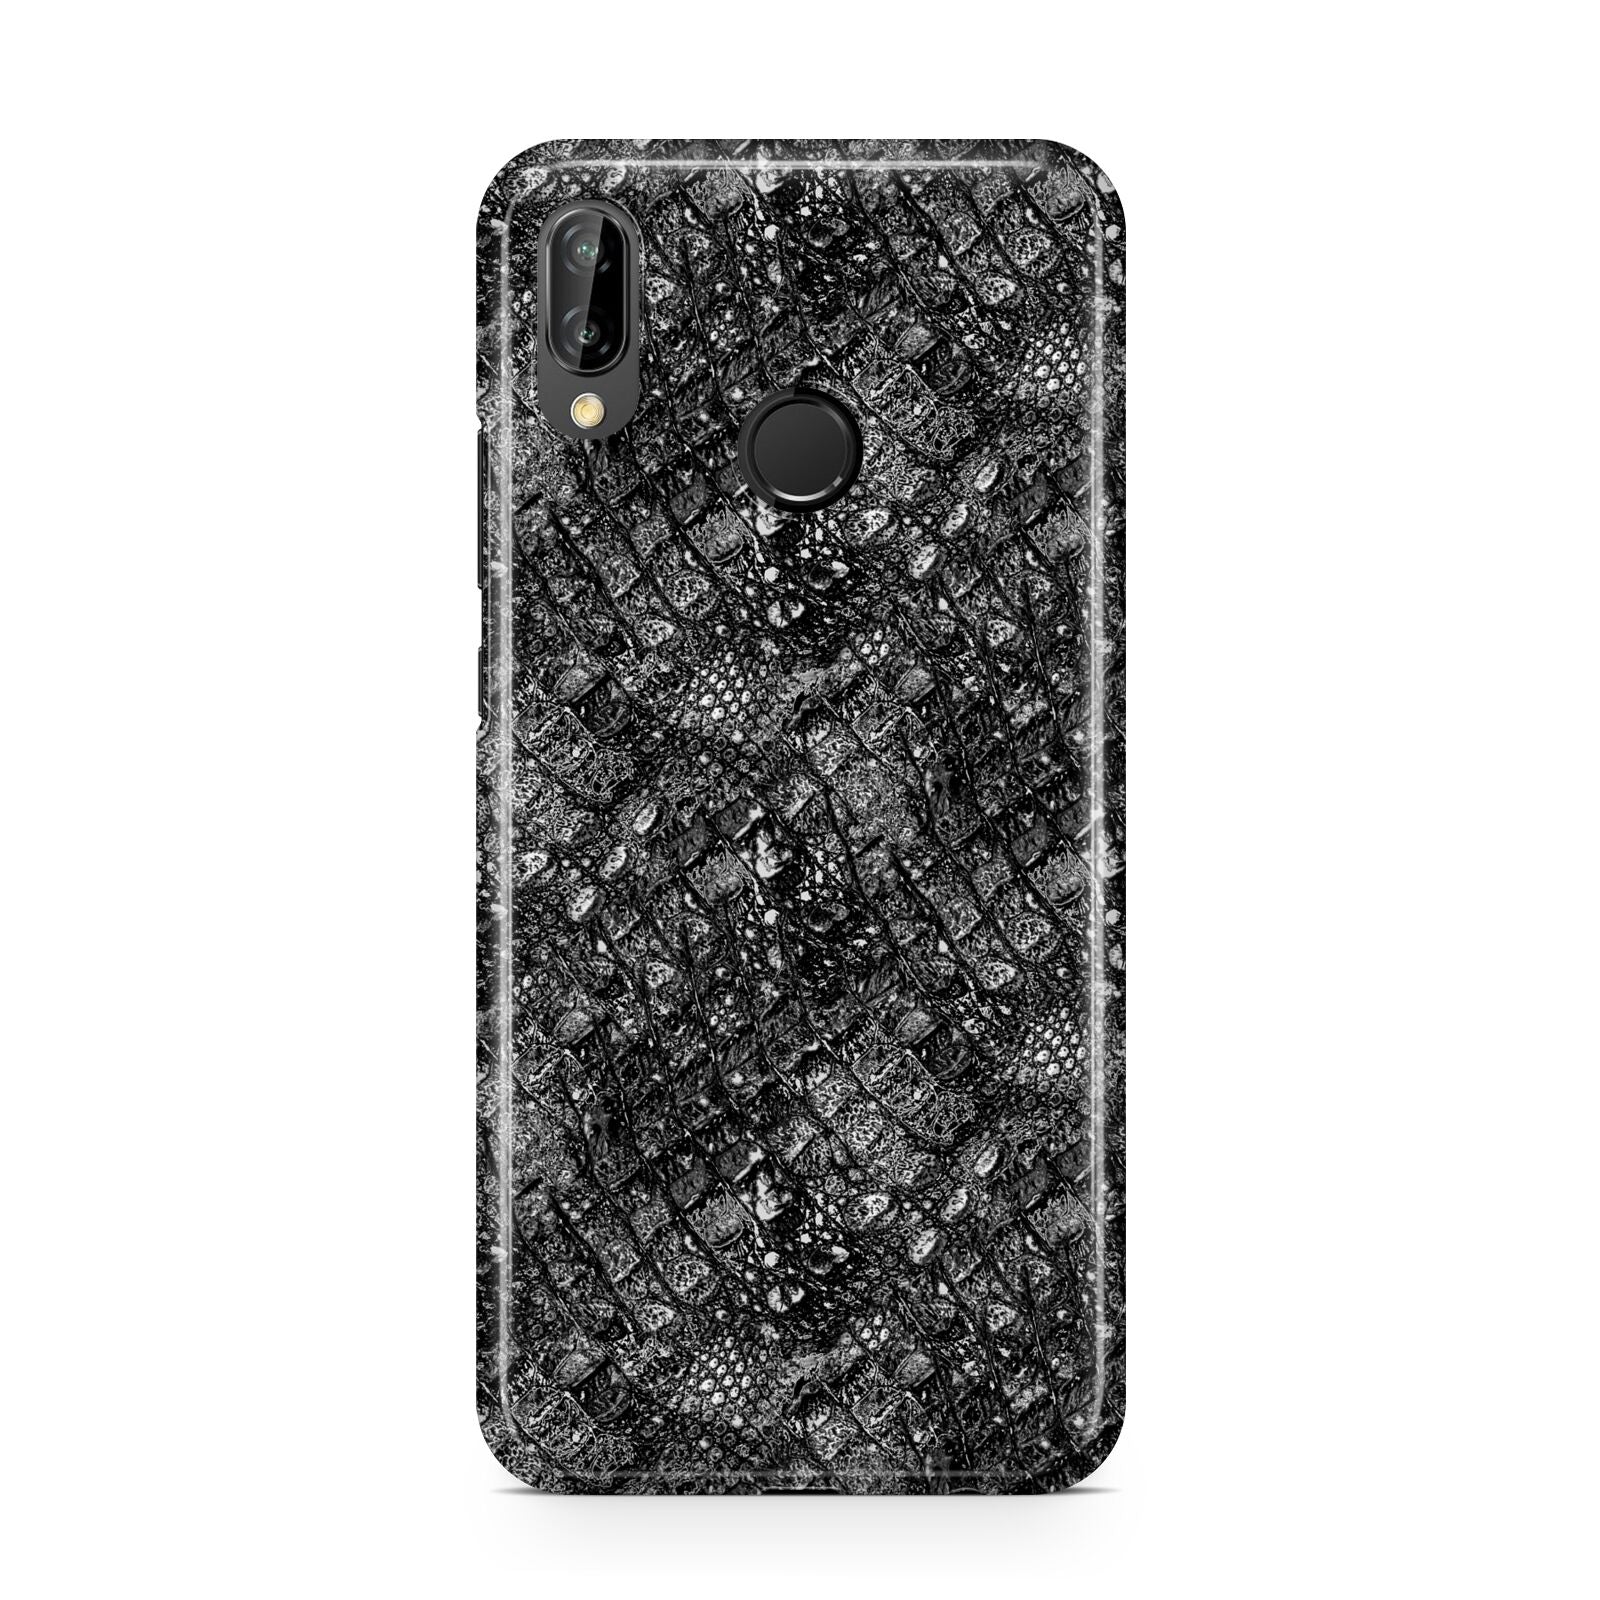 Snakeskin Design Huawei P20 Lite Phone Case